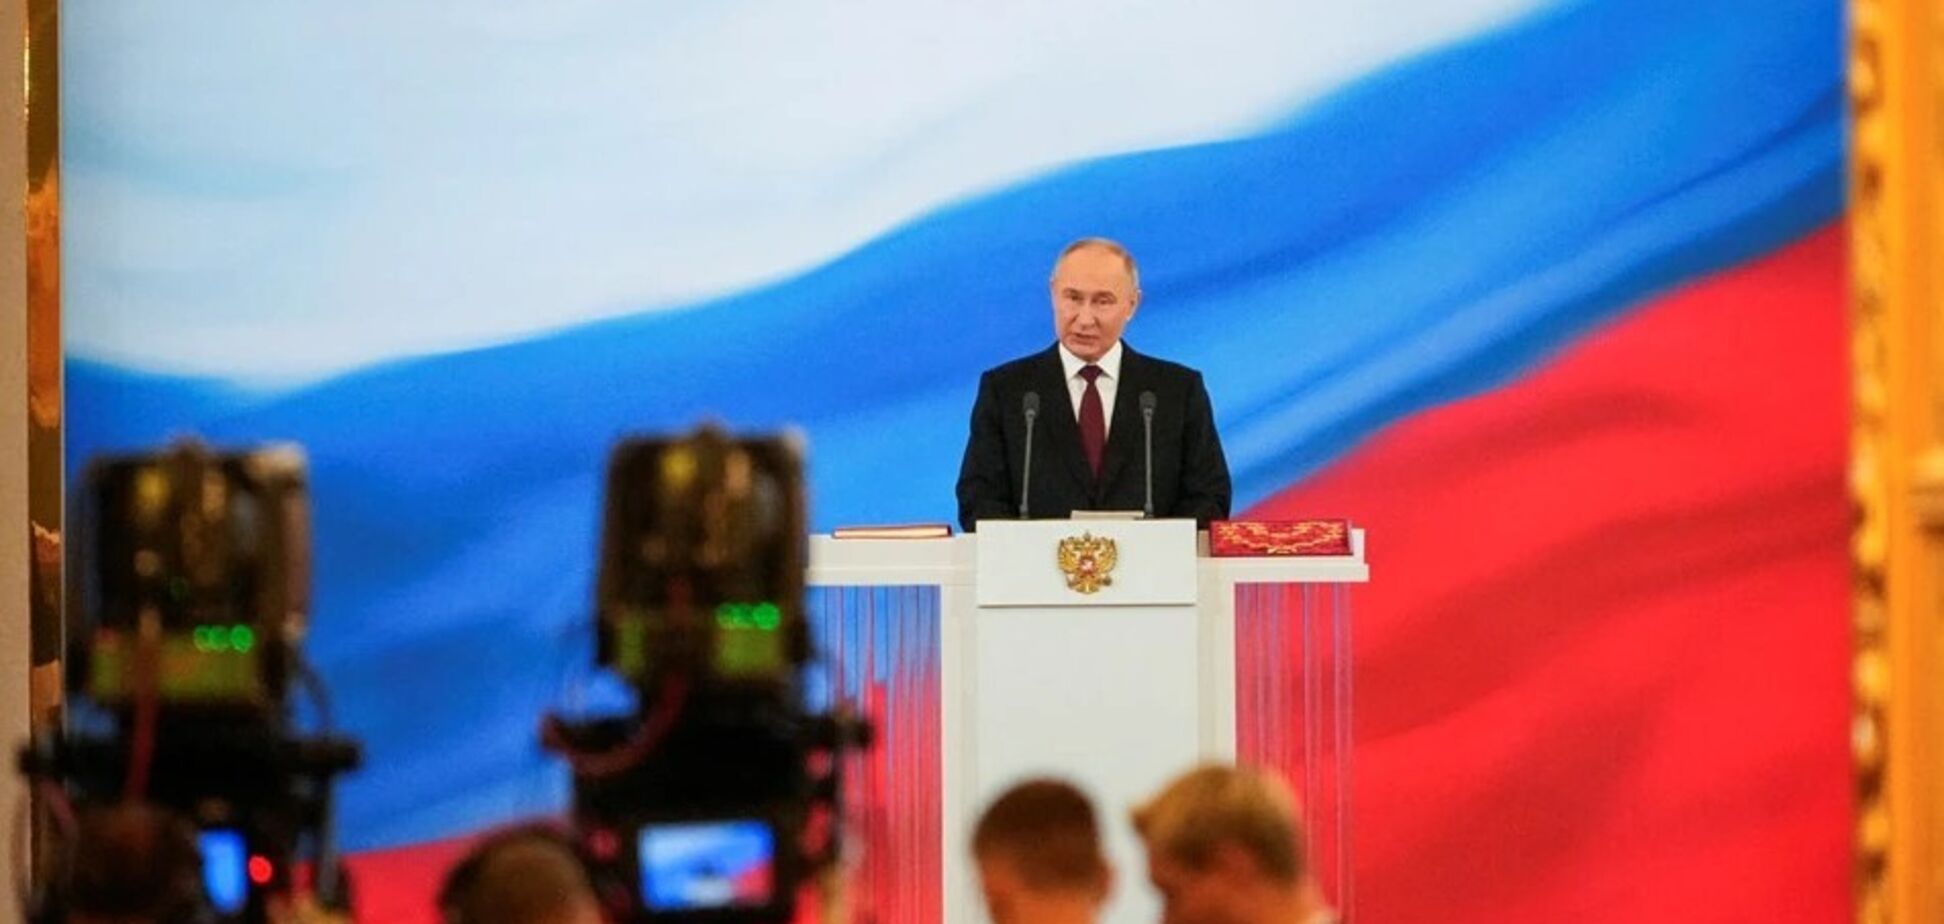 'Это нормальная практика': аналитик Краев объяснил, почему представители стран ЕС поехали на инаугурацию Путина